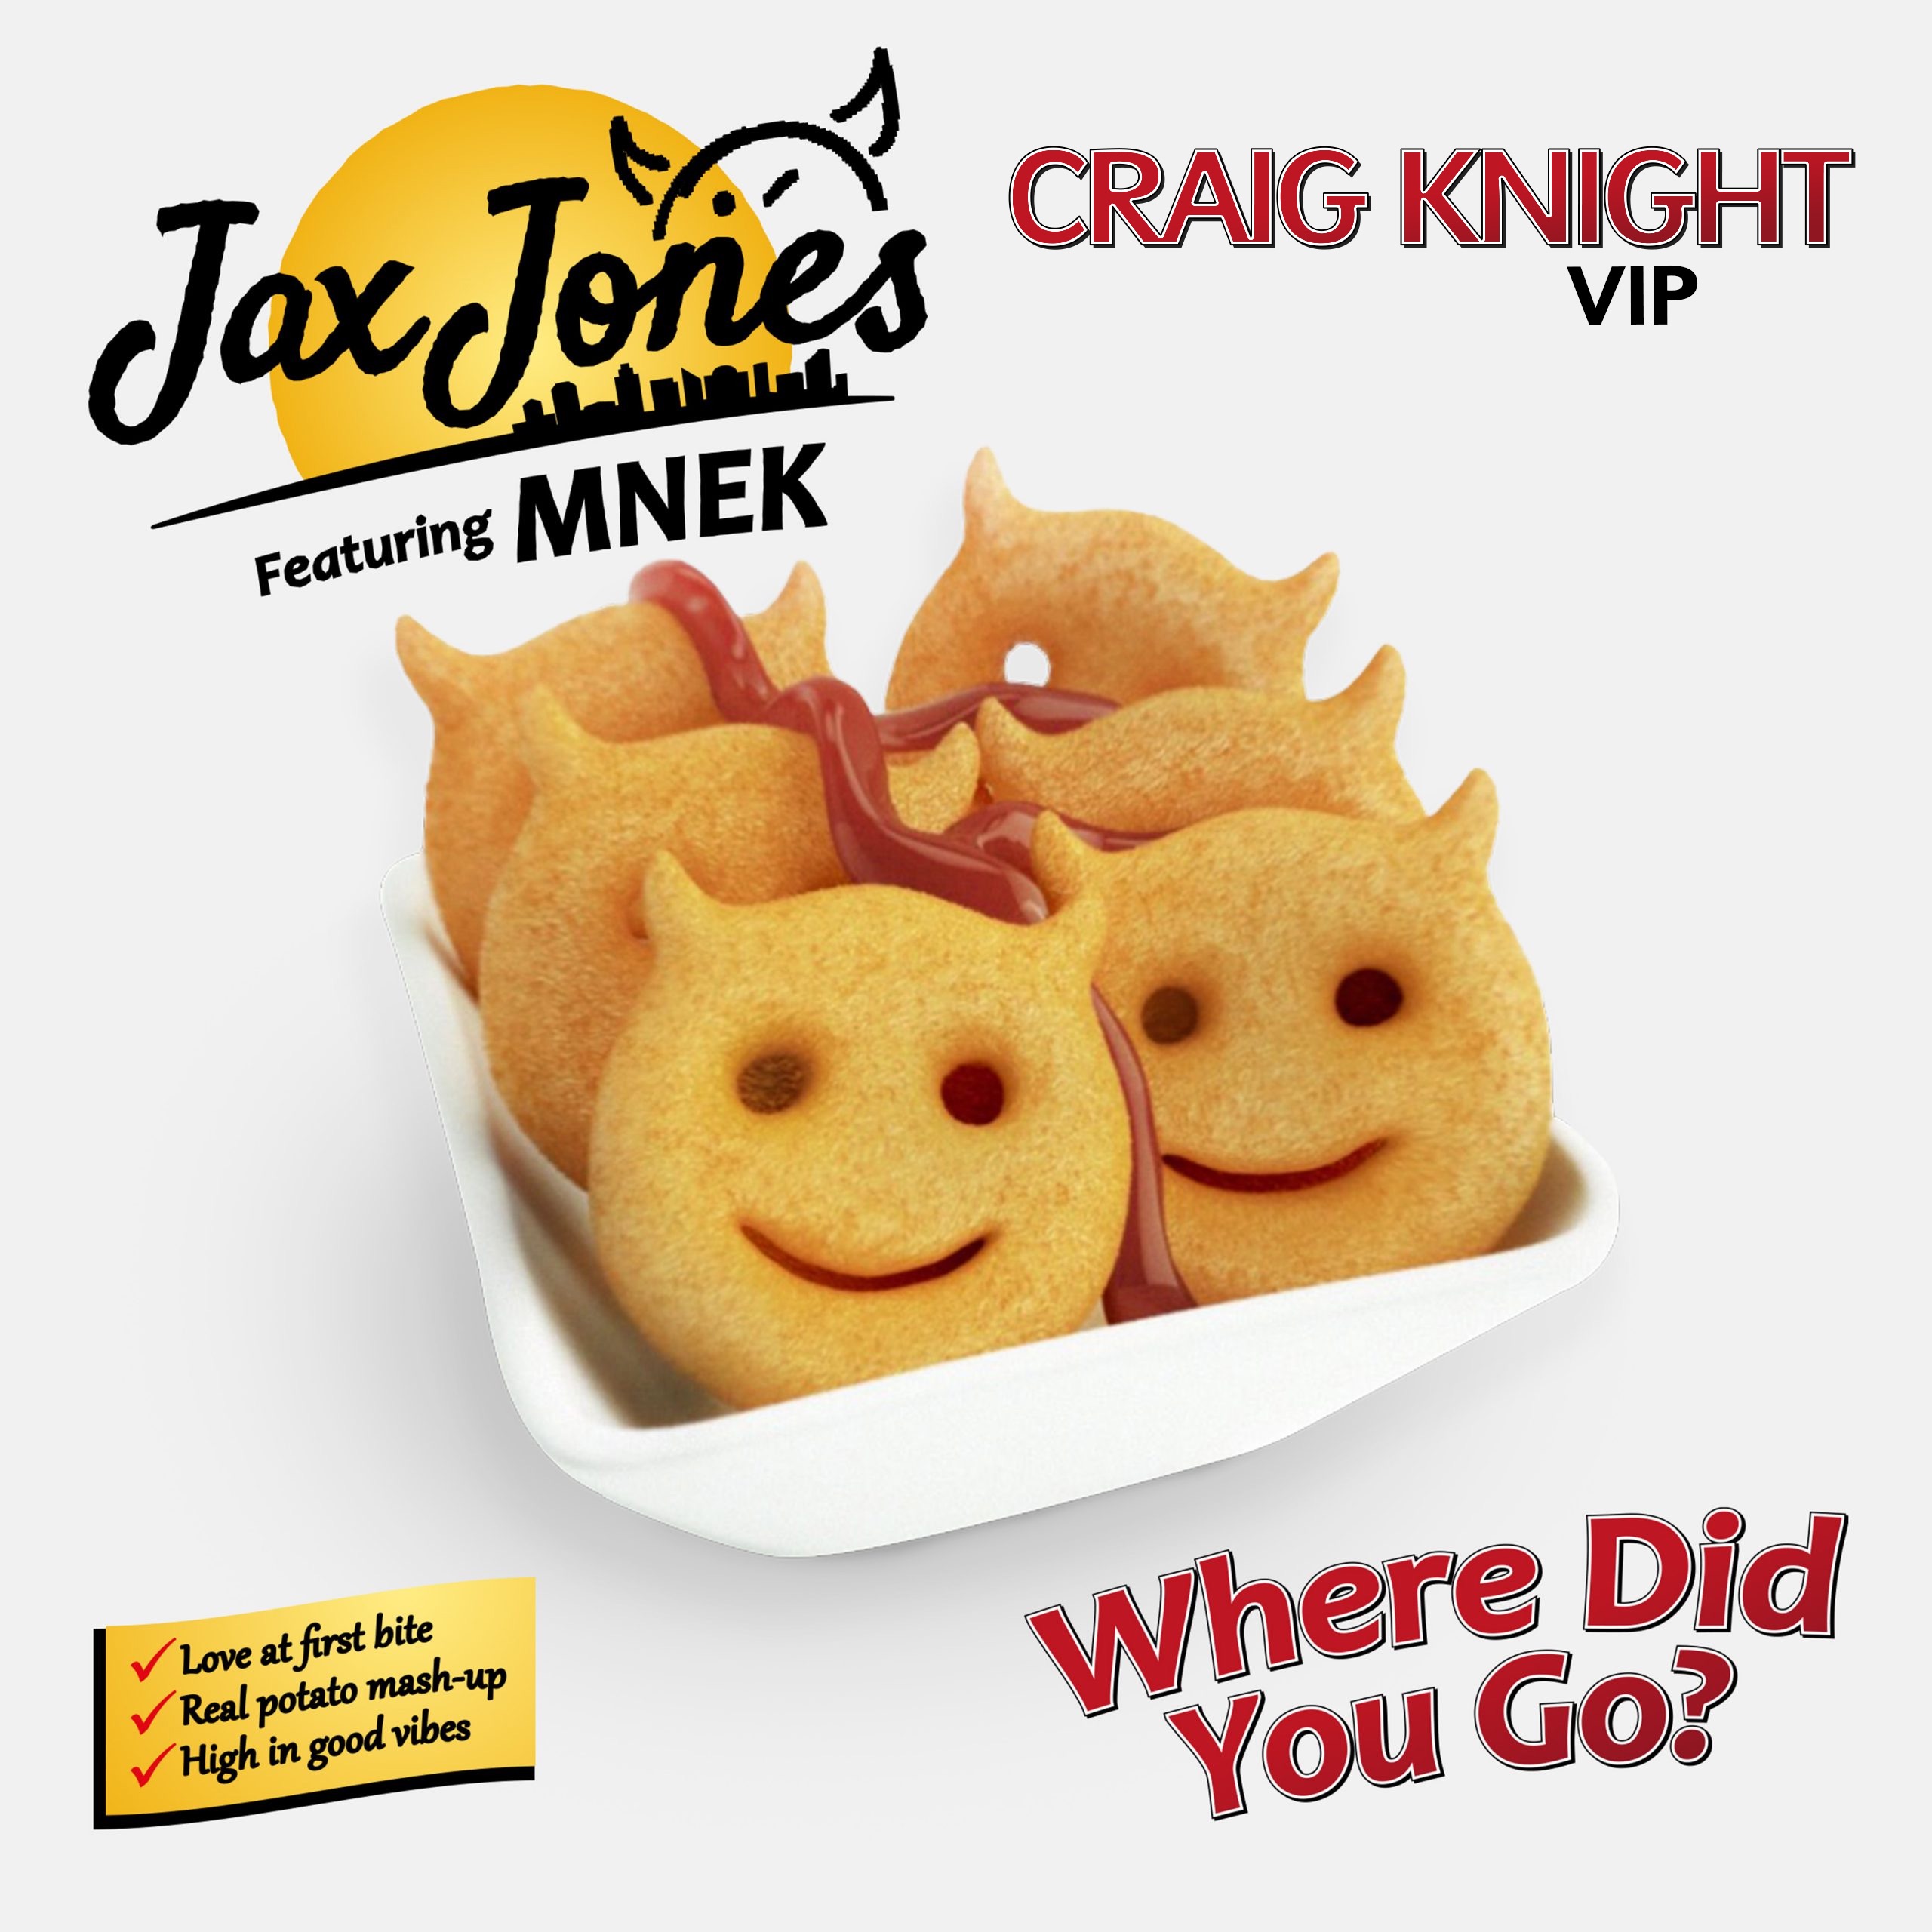 Shkarko Jax Jones Feat. MNEK - Where Did You Go (Craig Knight VIP) ** FREE DOWNLOAD**